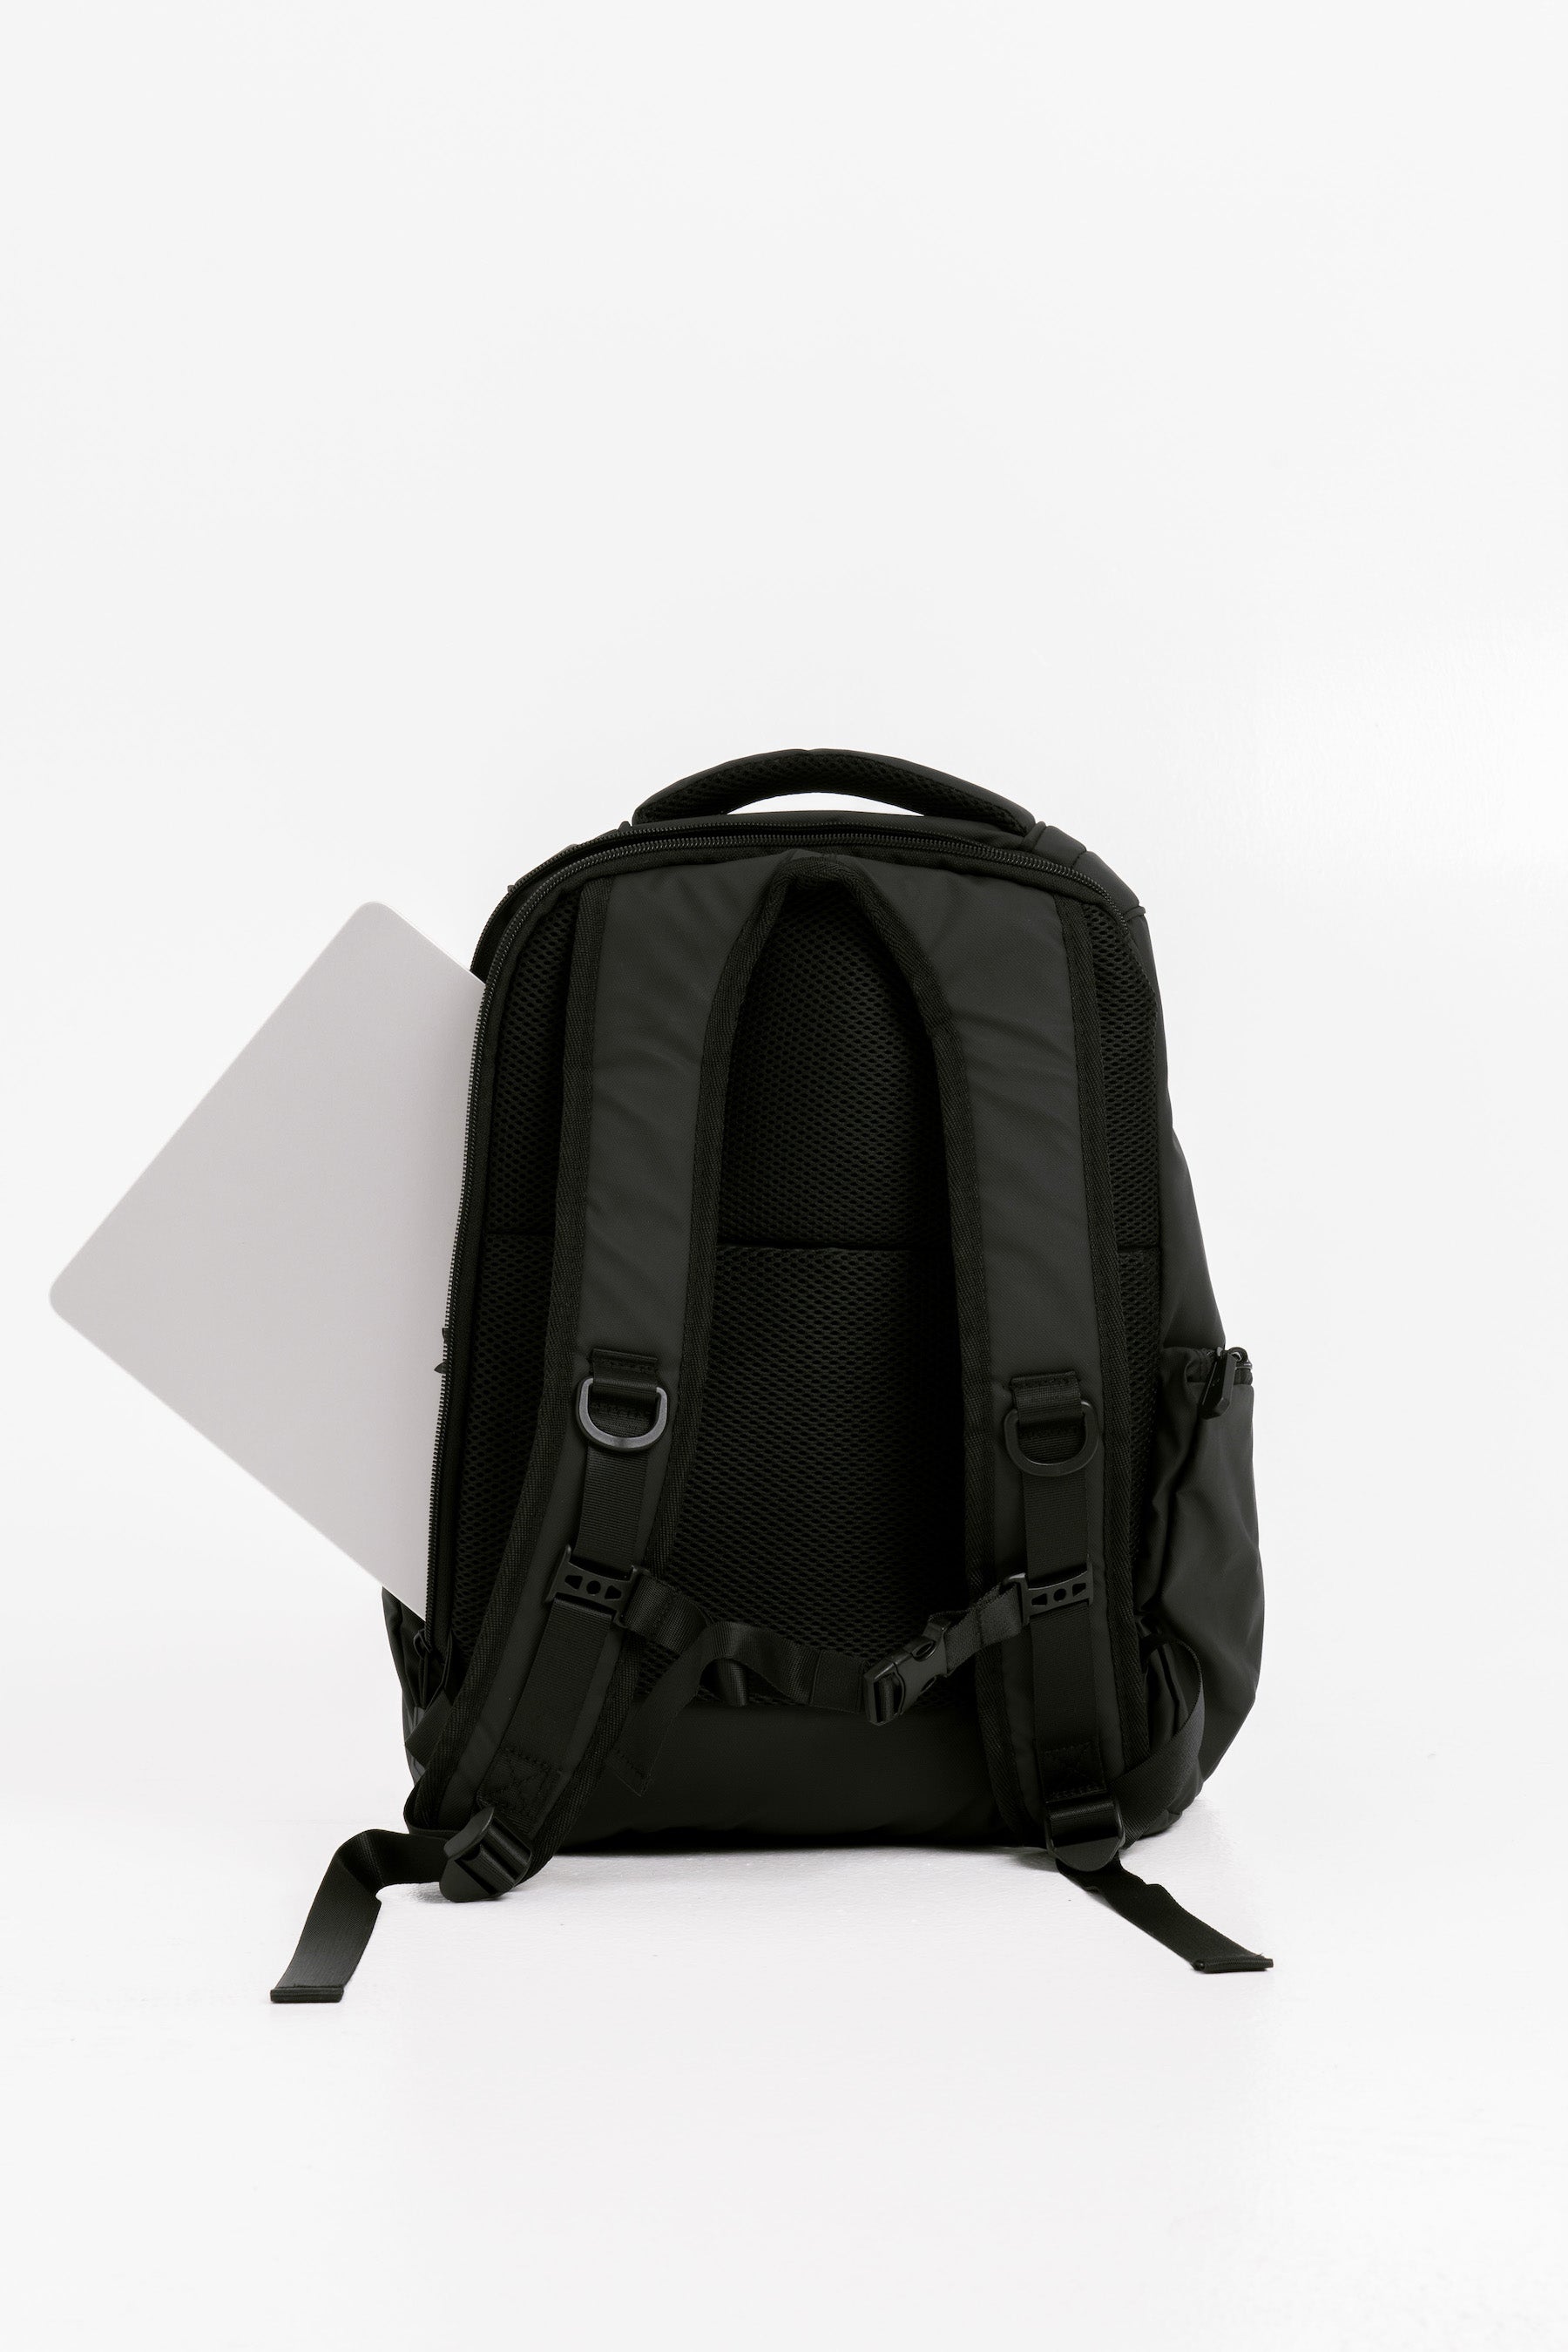 Commuter Backpack - Jet Black